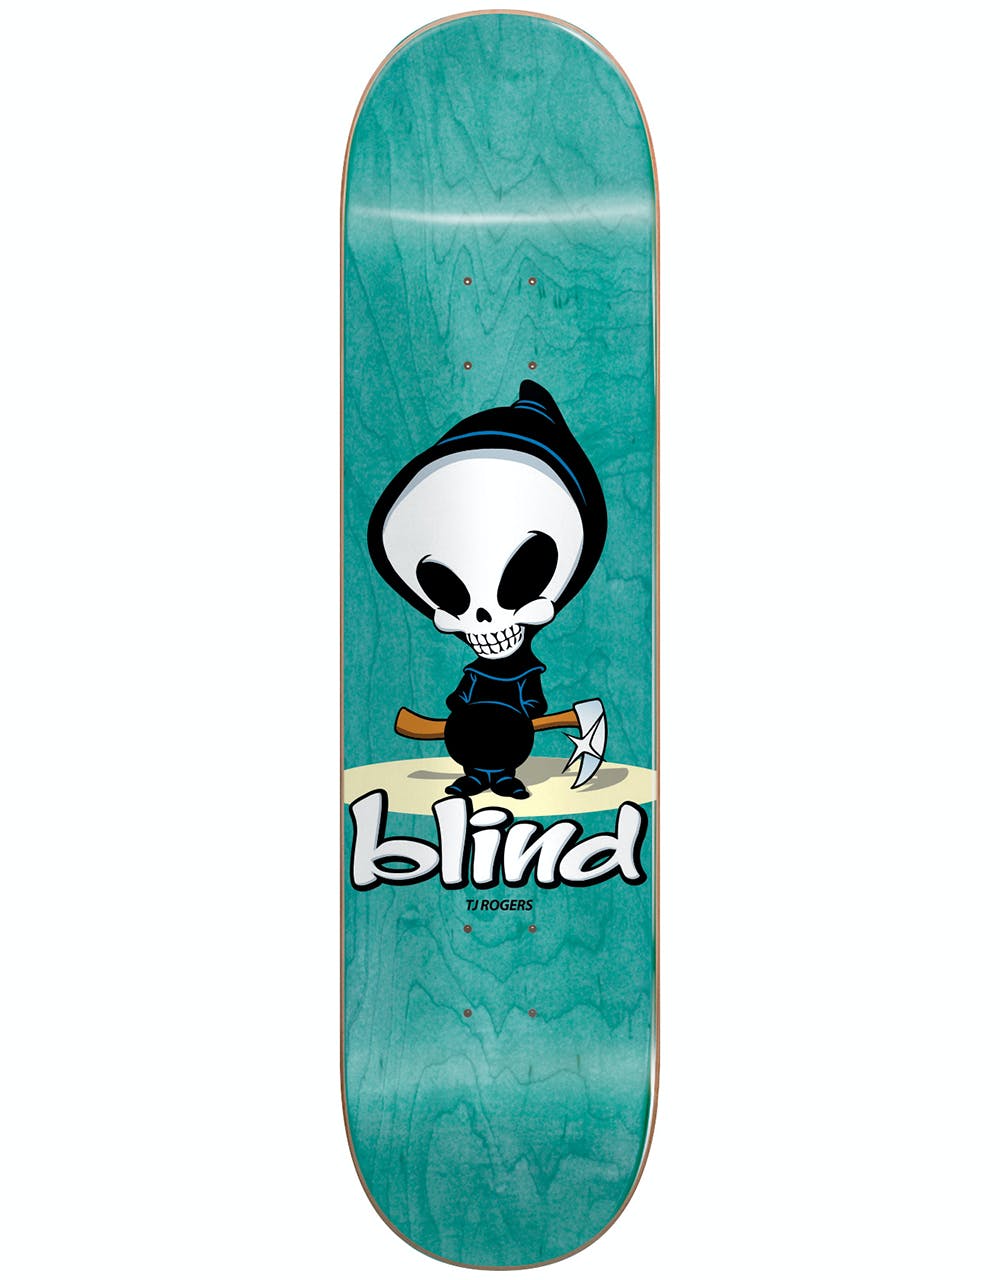 Blind Rogers OG Reaper Skateboard Deck - 8.375"